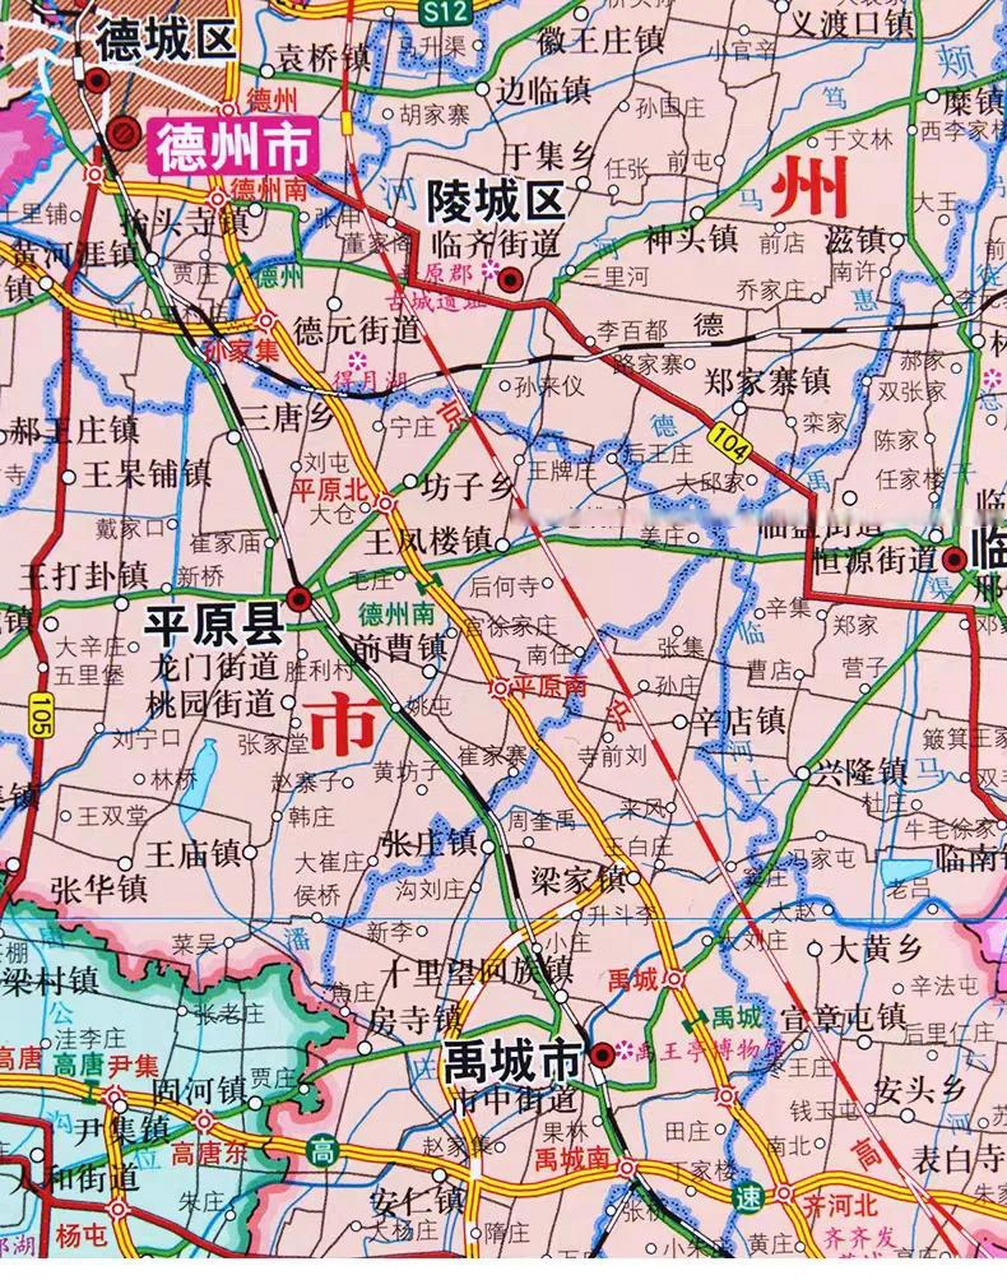 从平原县到济南约40分钟,坐高铁到北京约1小时,到上海3个